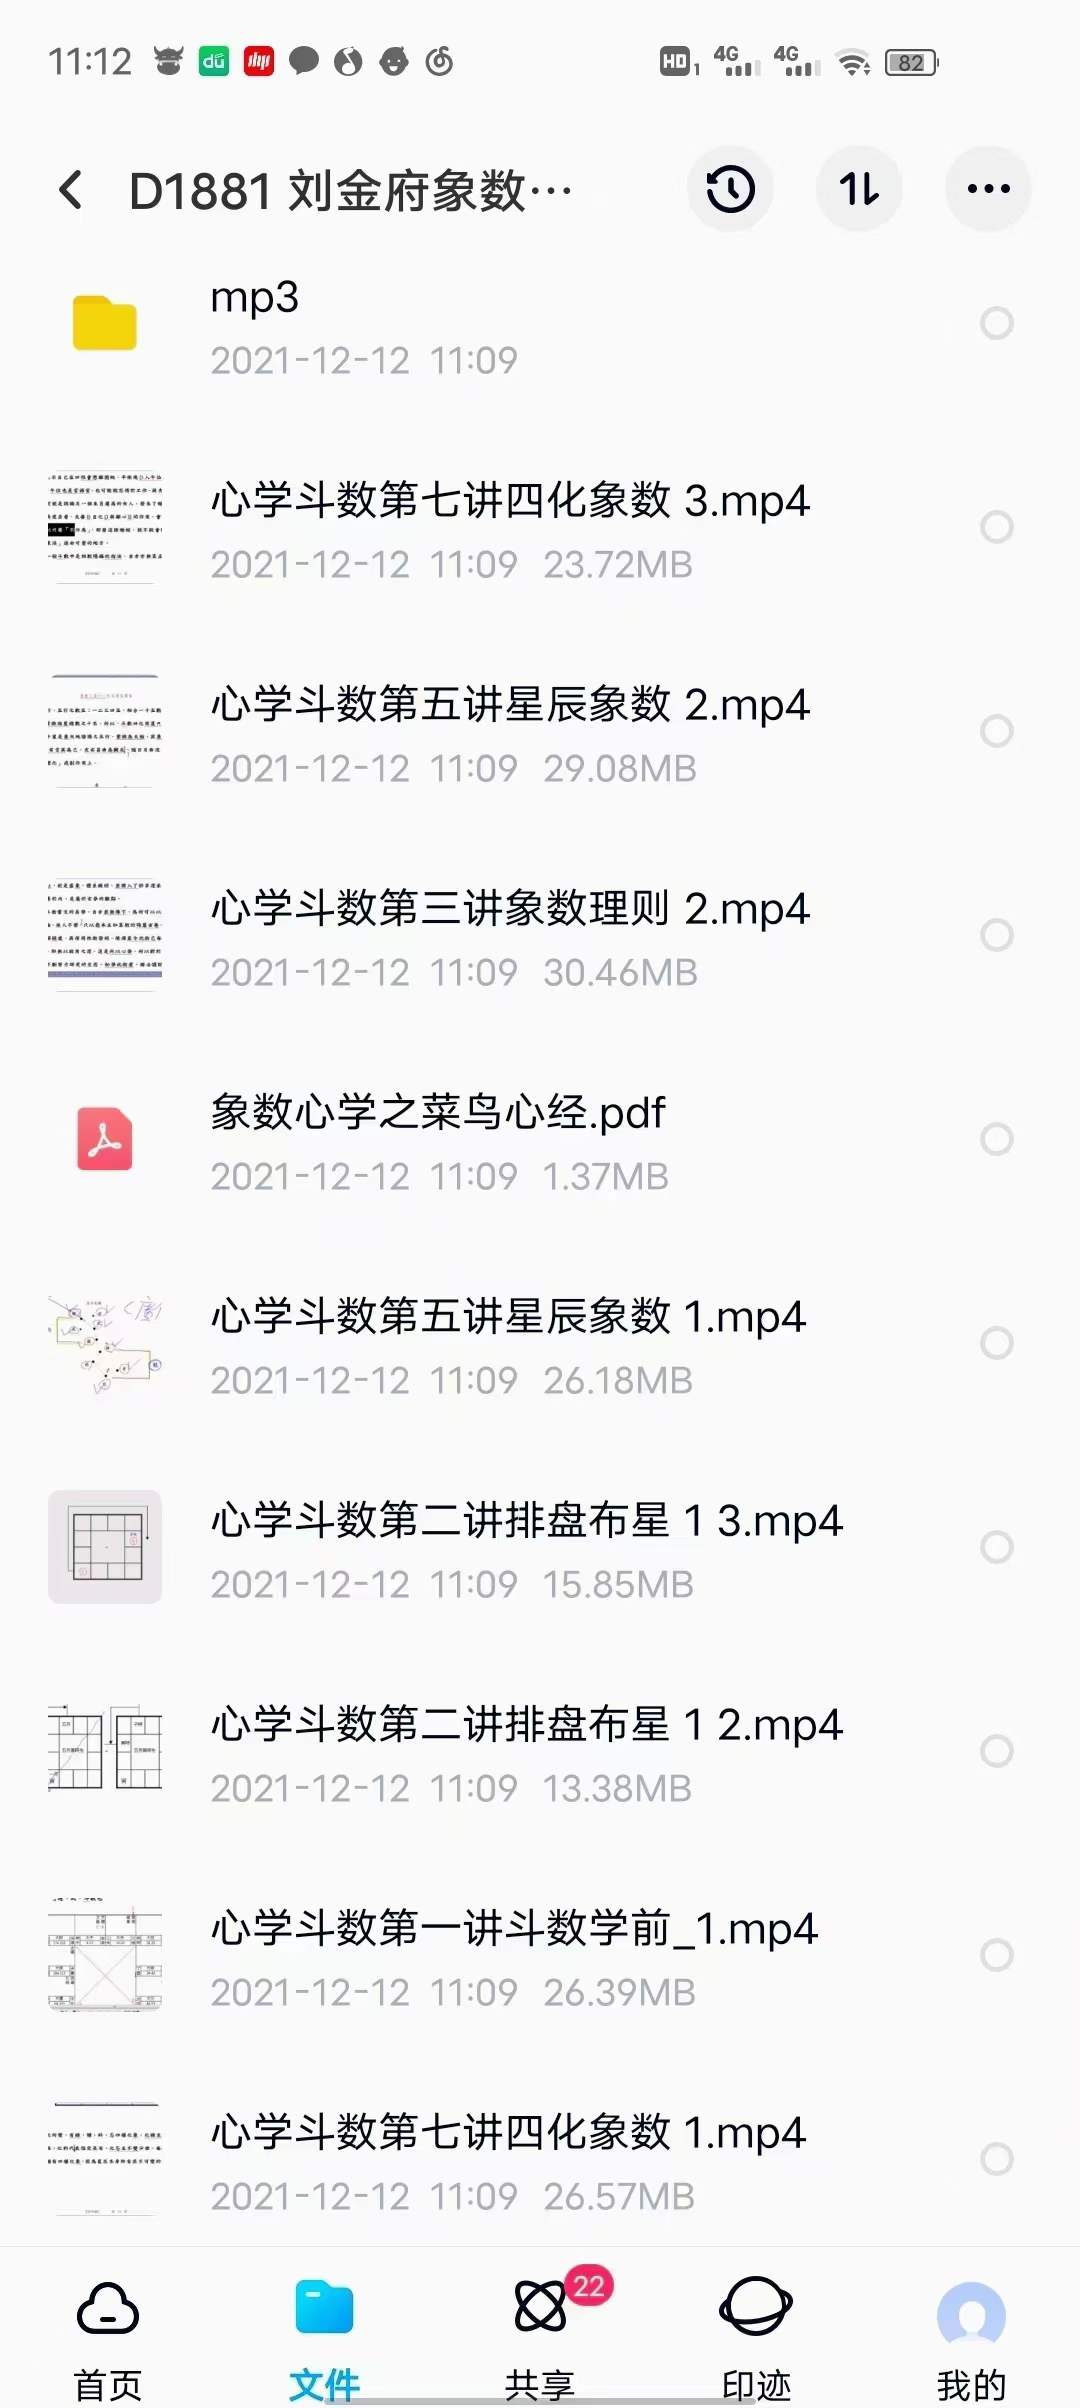 刘金府象数心学紫薇斗数 视频+录音+文档 百度网盘下载(图2)